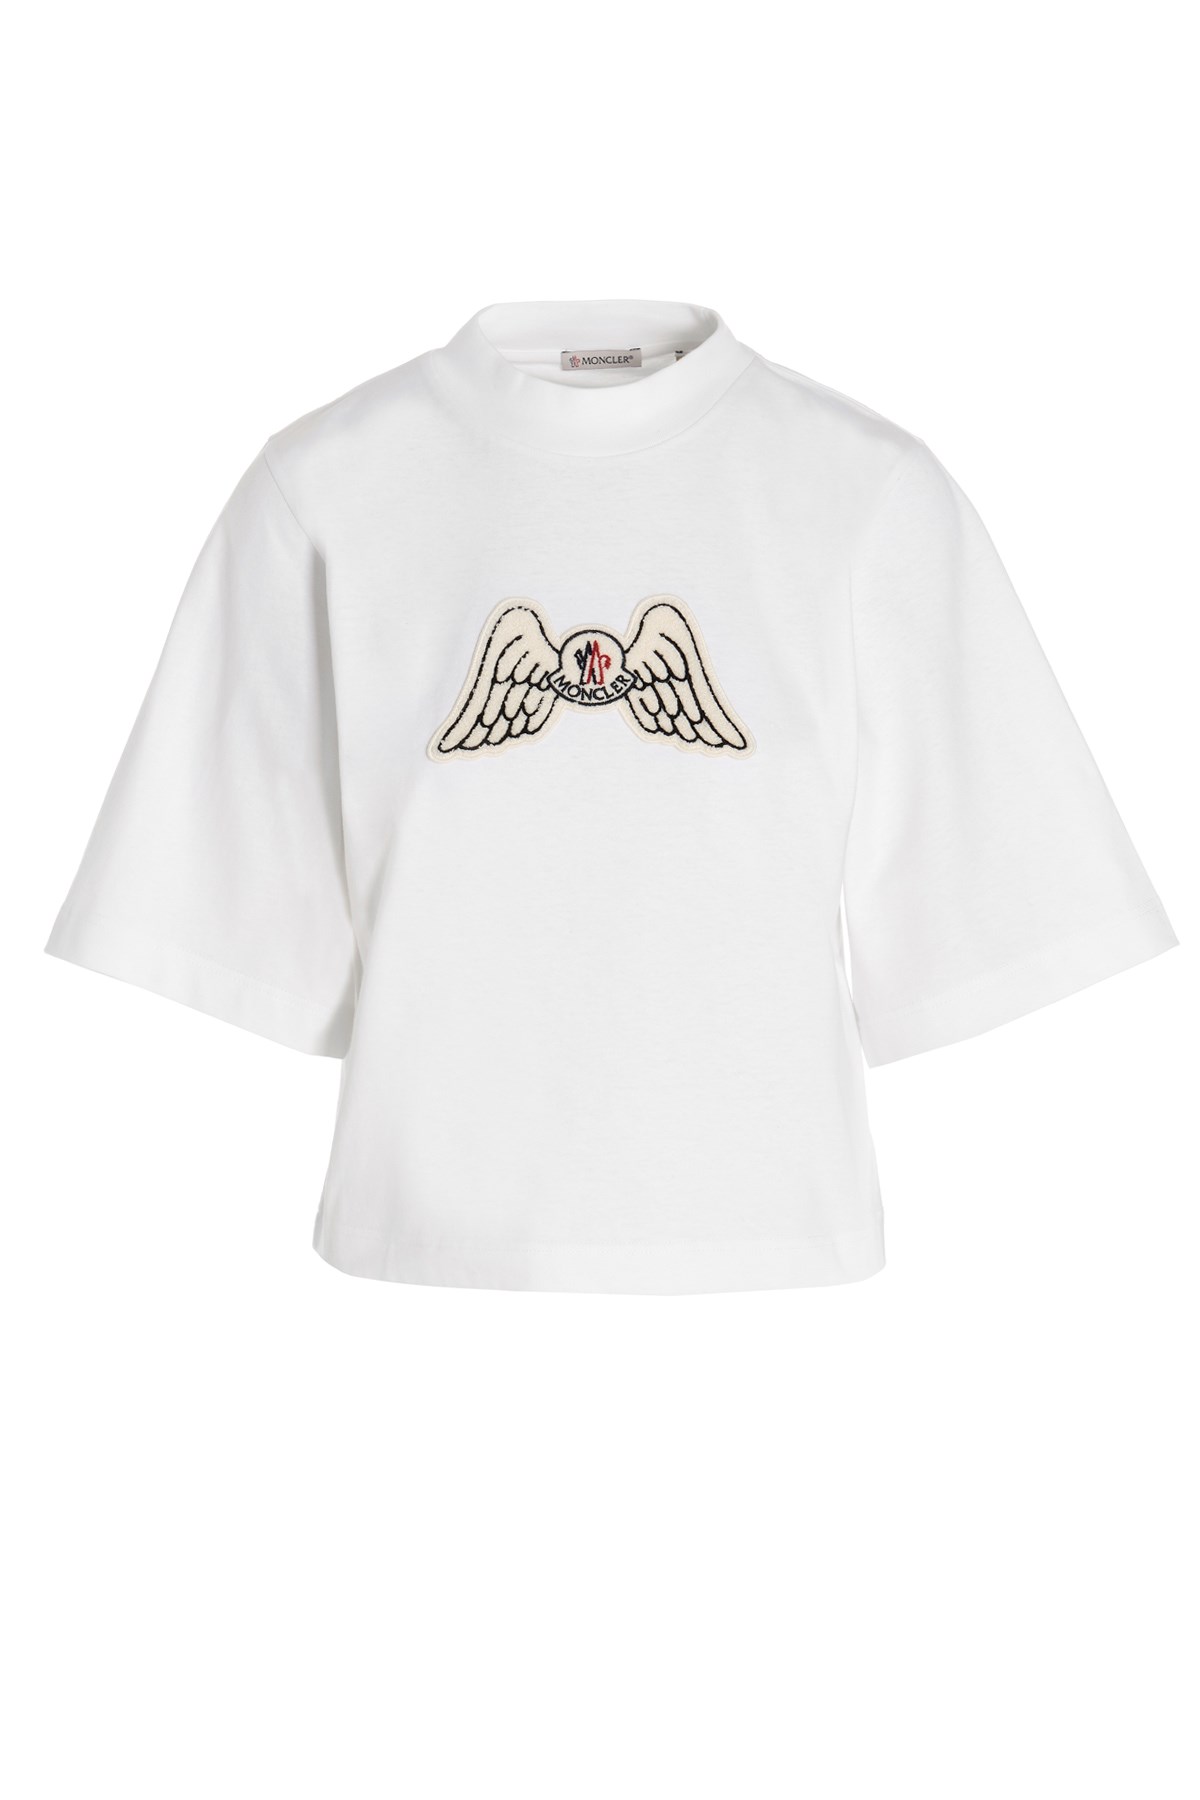 MONCLER GENIUS 'Ss’ Moncler Genius X Palm Angels T-Shirt